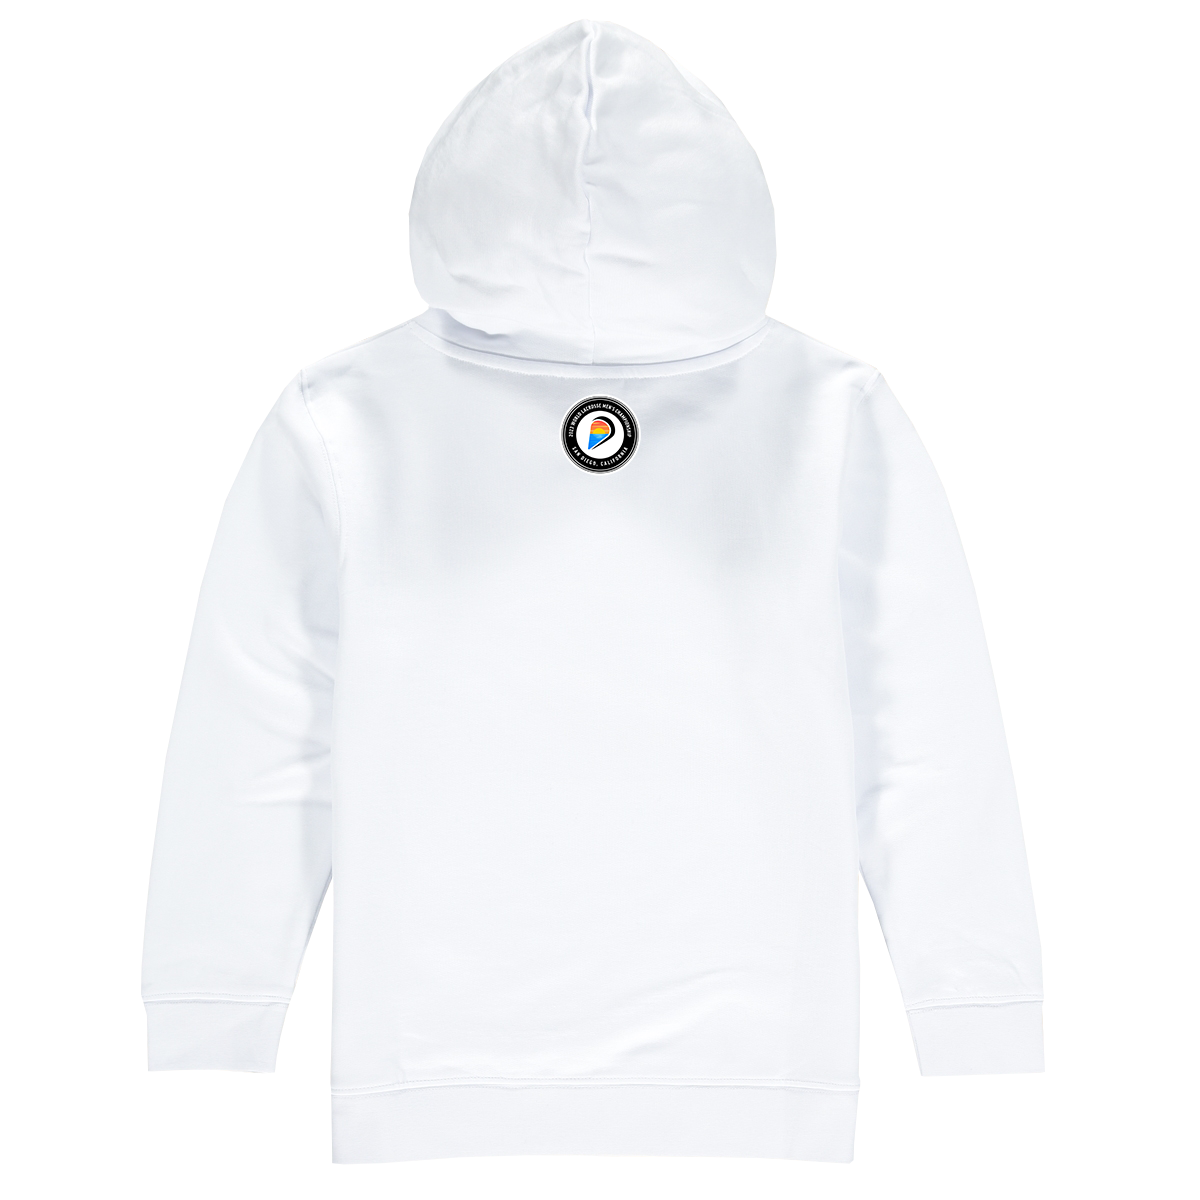 Jamaica Premium Unisex Hoodie Sweatshirt White